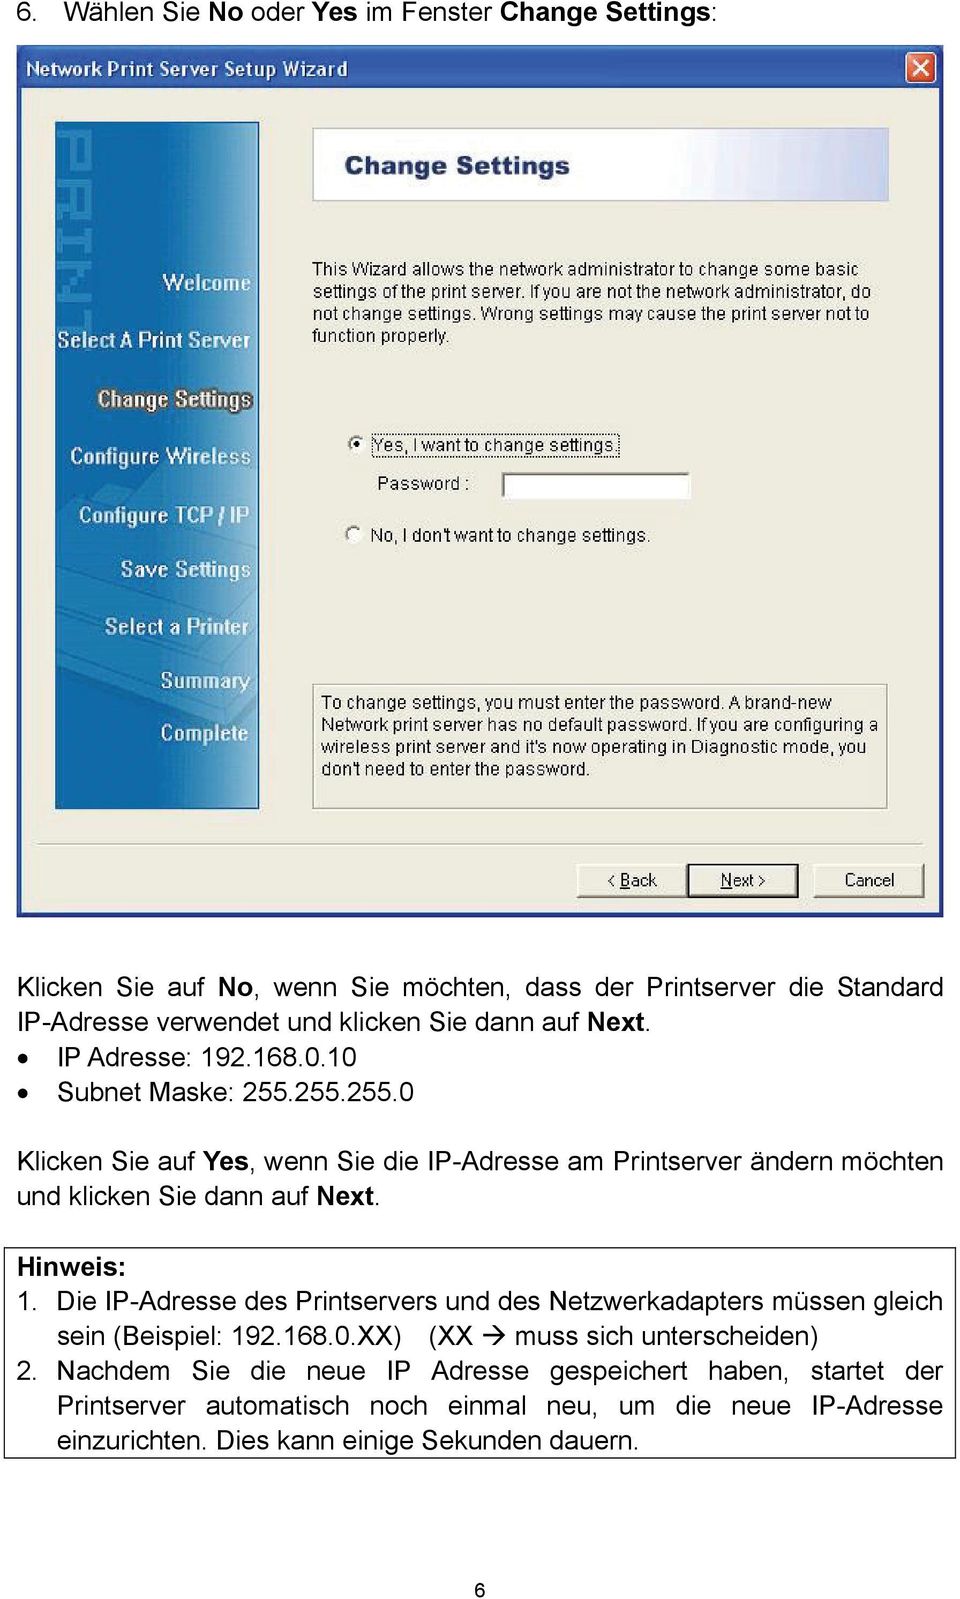 Hinweis: 1. Die IP-Adresse des Printservers und des Netzwerkadapters müssen gleich sein (Beispiel: 192.168.0.XX) (XX muss sich unterscheiden) 2.